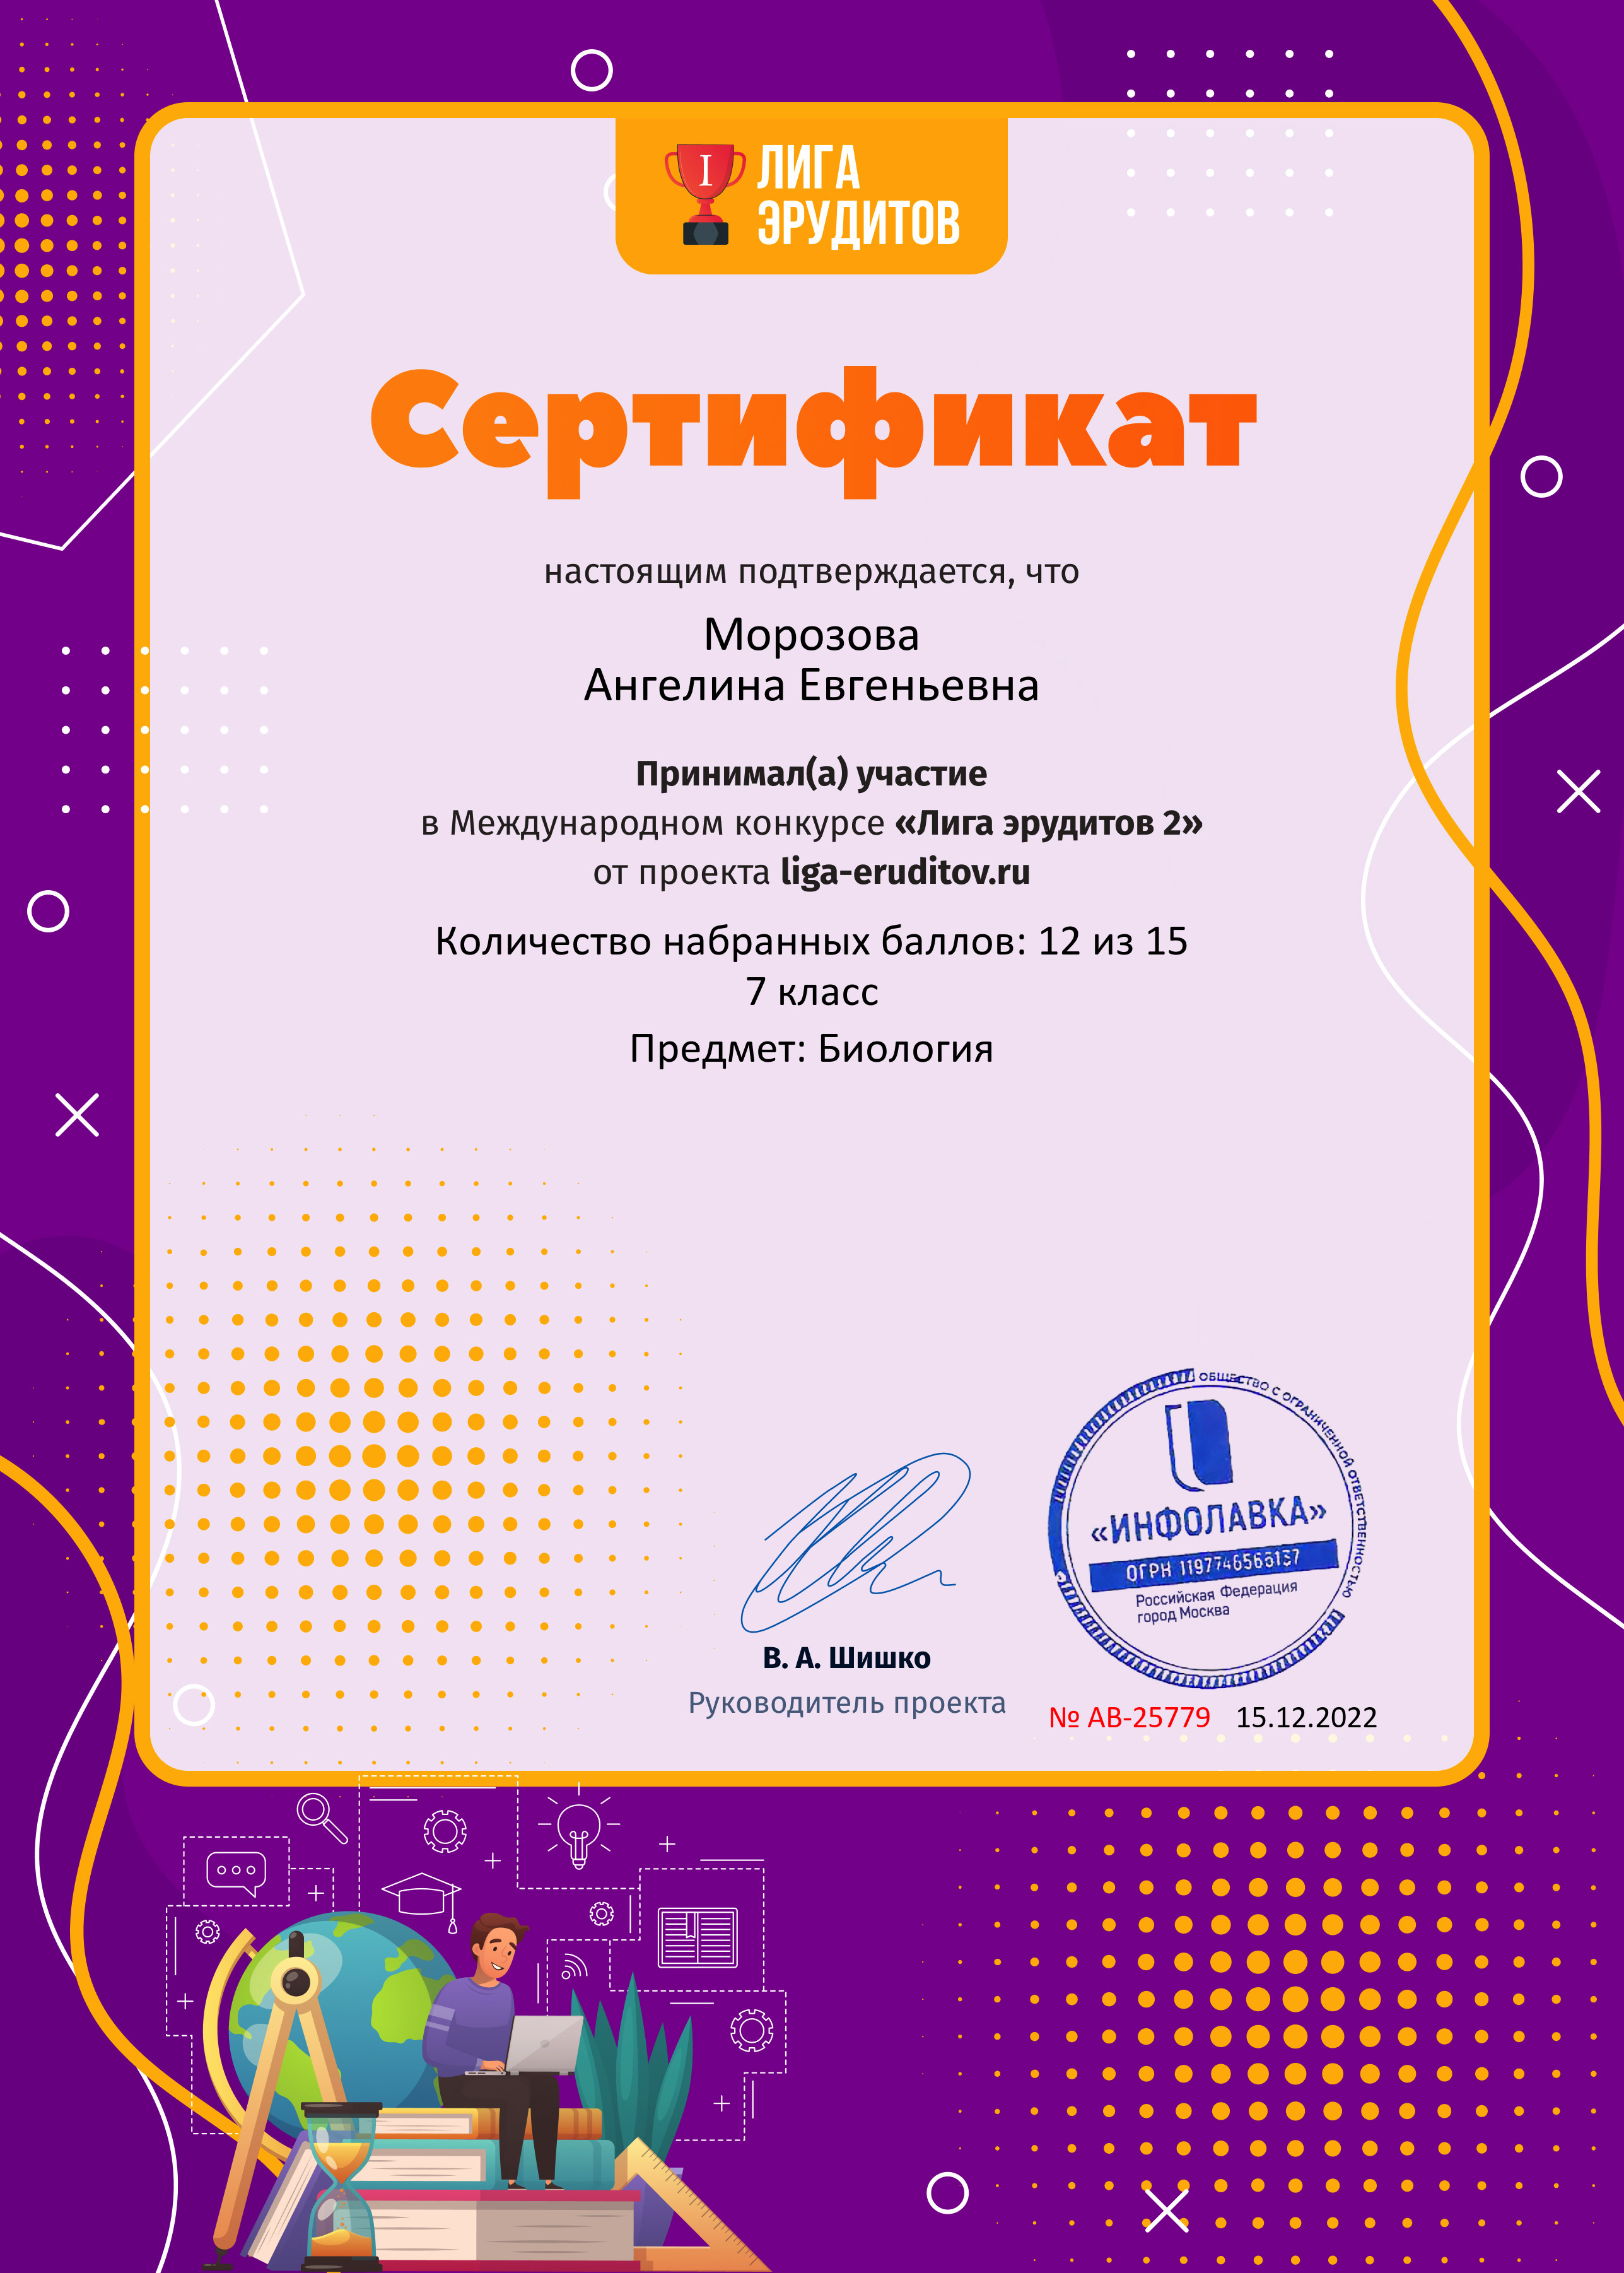 Сертификат проекта Лига Эрудитов №25779